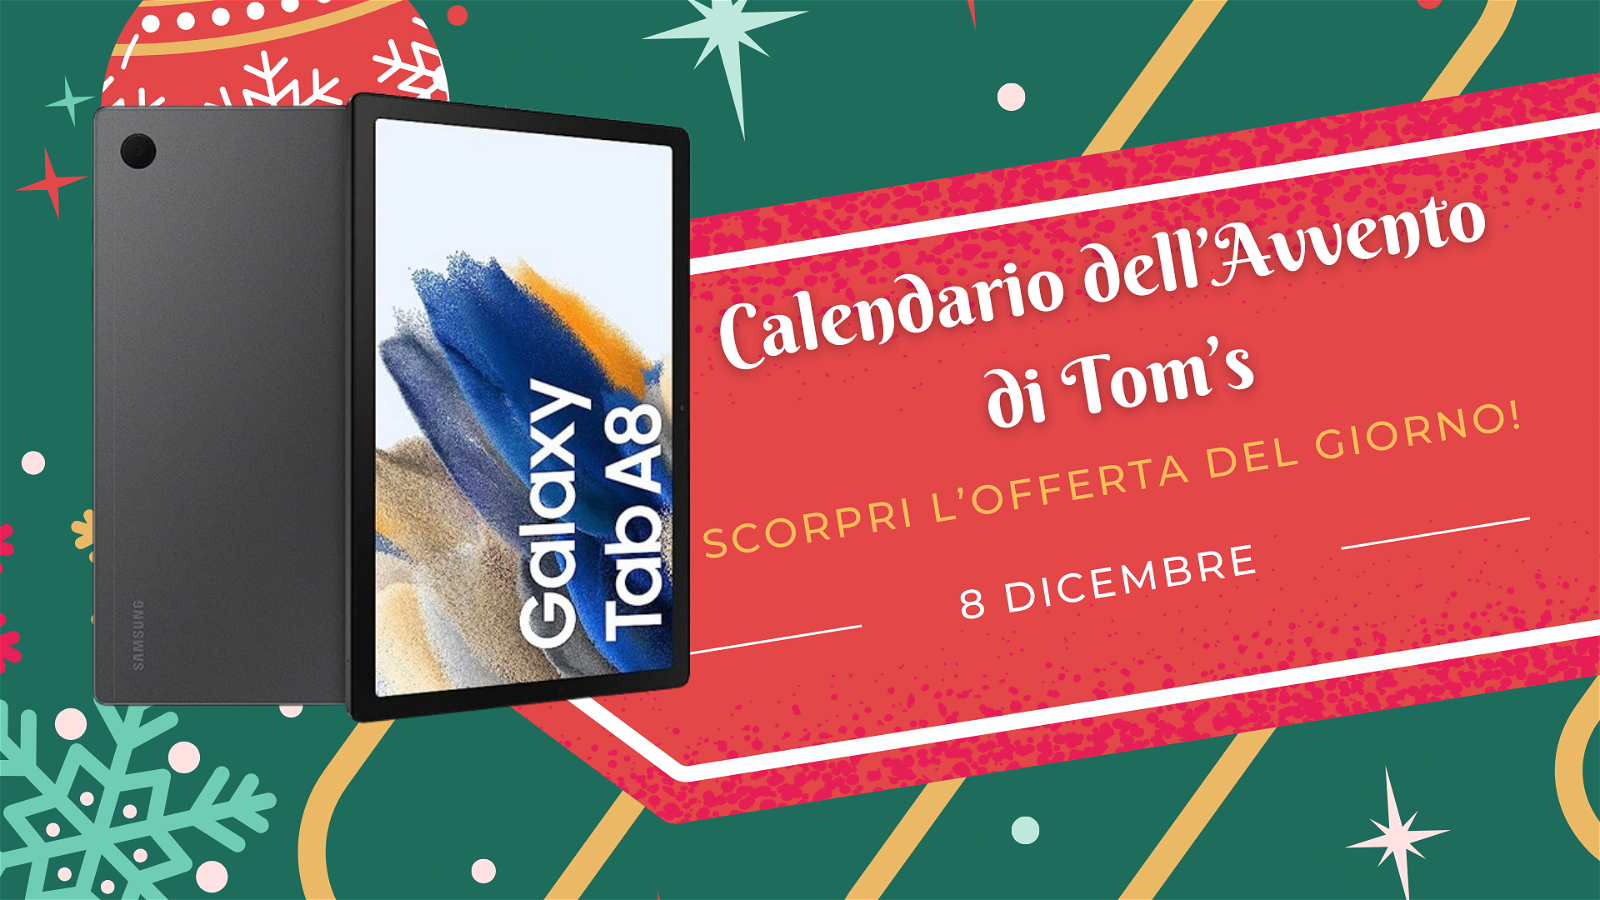 Immagine di Calendario dell'avvento di Tom's: scopri l'offerta dell'8 dicembre